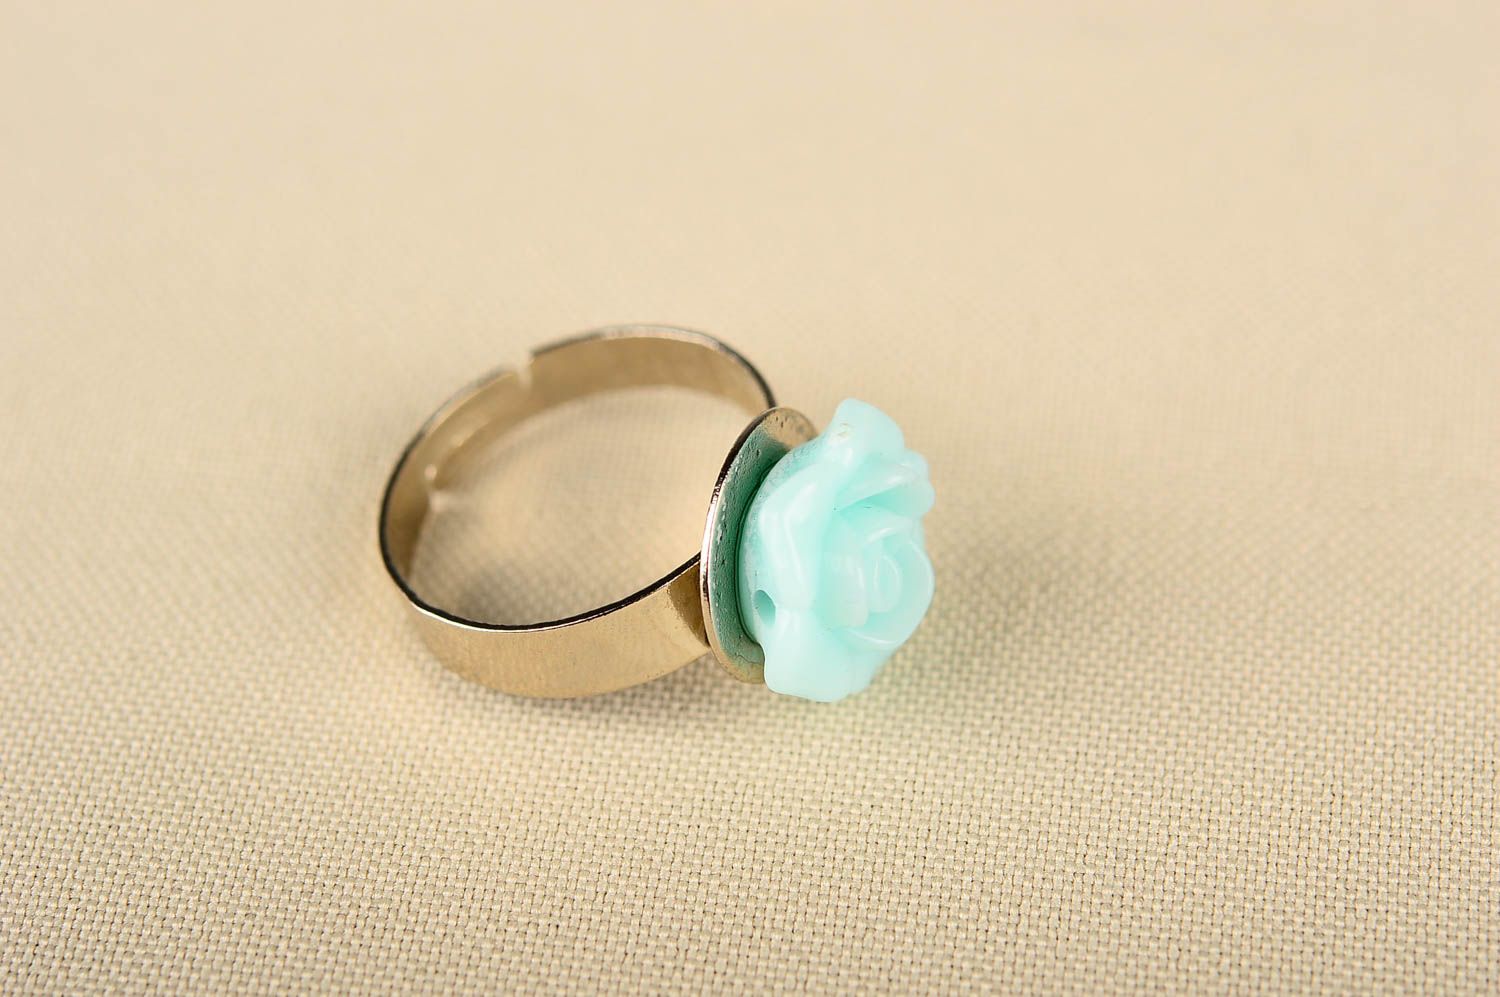 Кольцо ручной работы кольцо из пластика в виде цветка модное кольцо для девушки фото 1